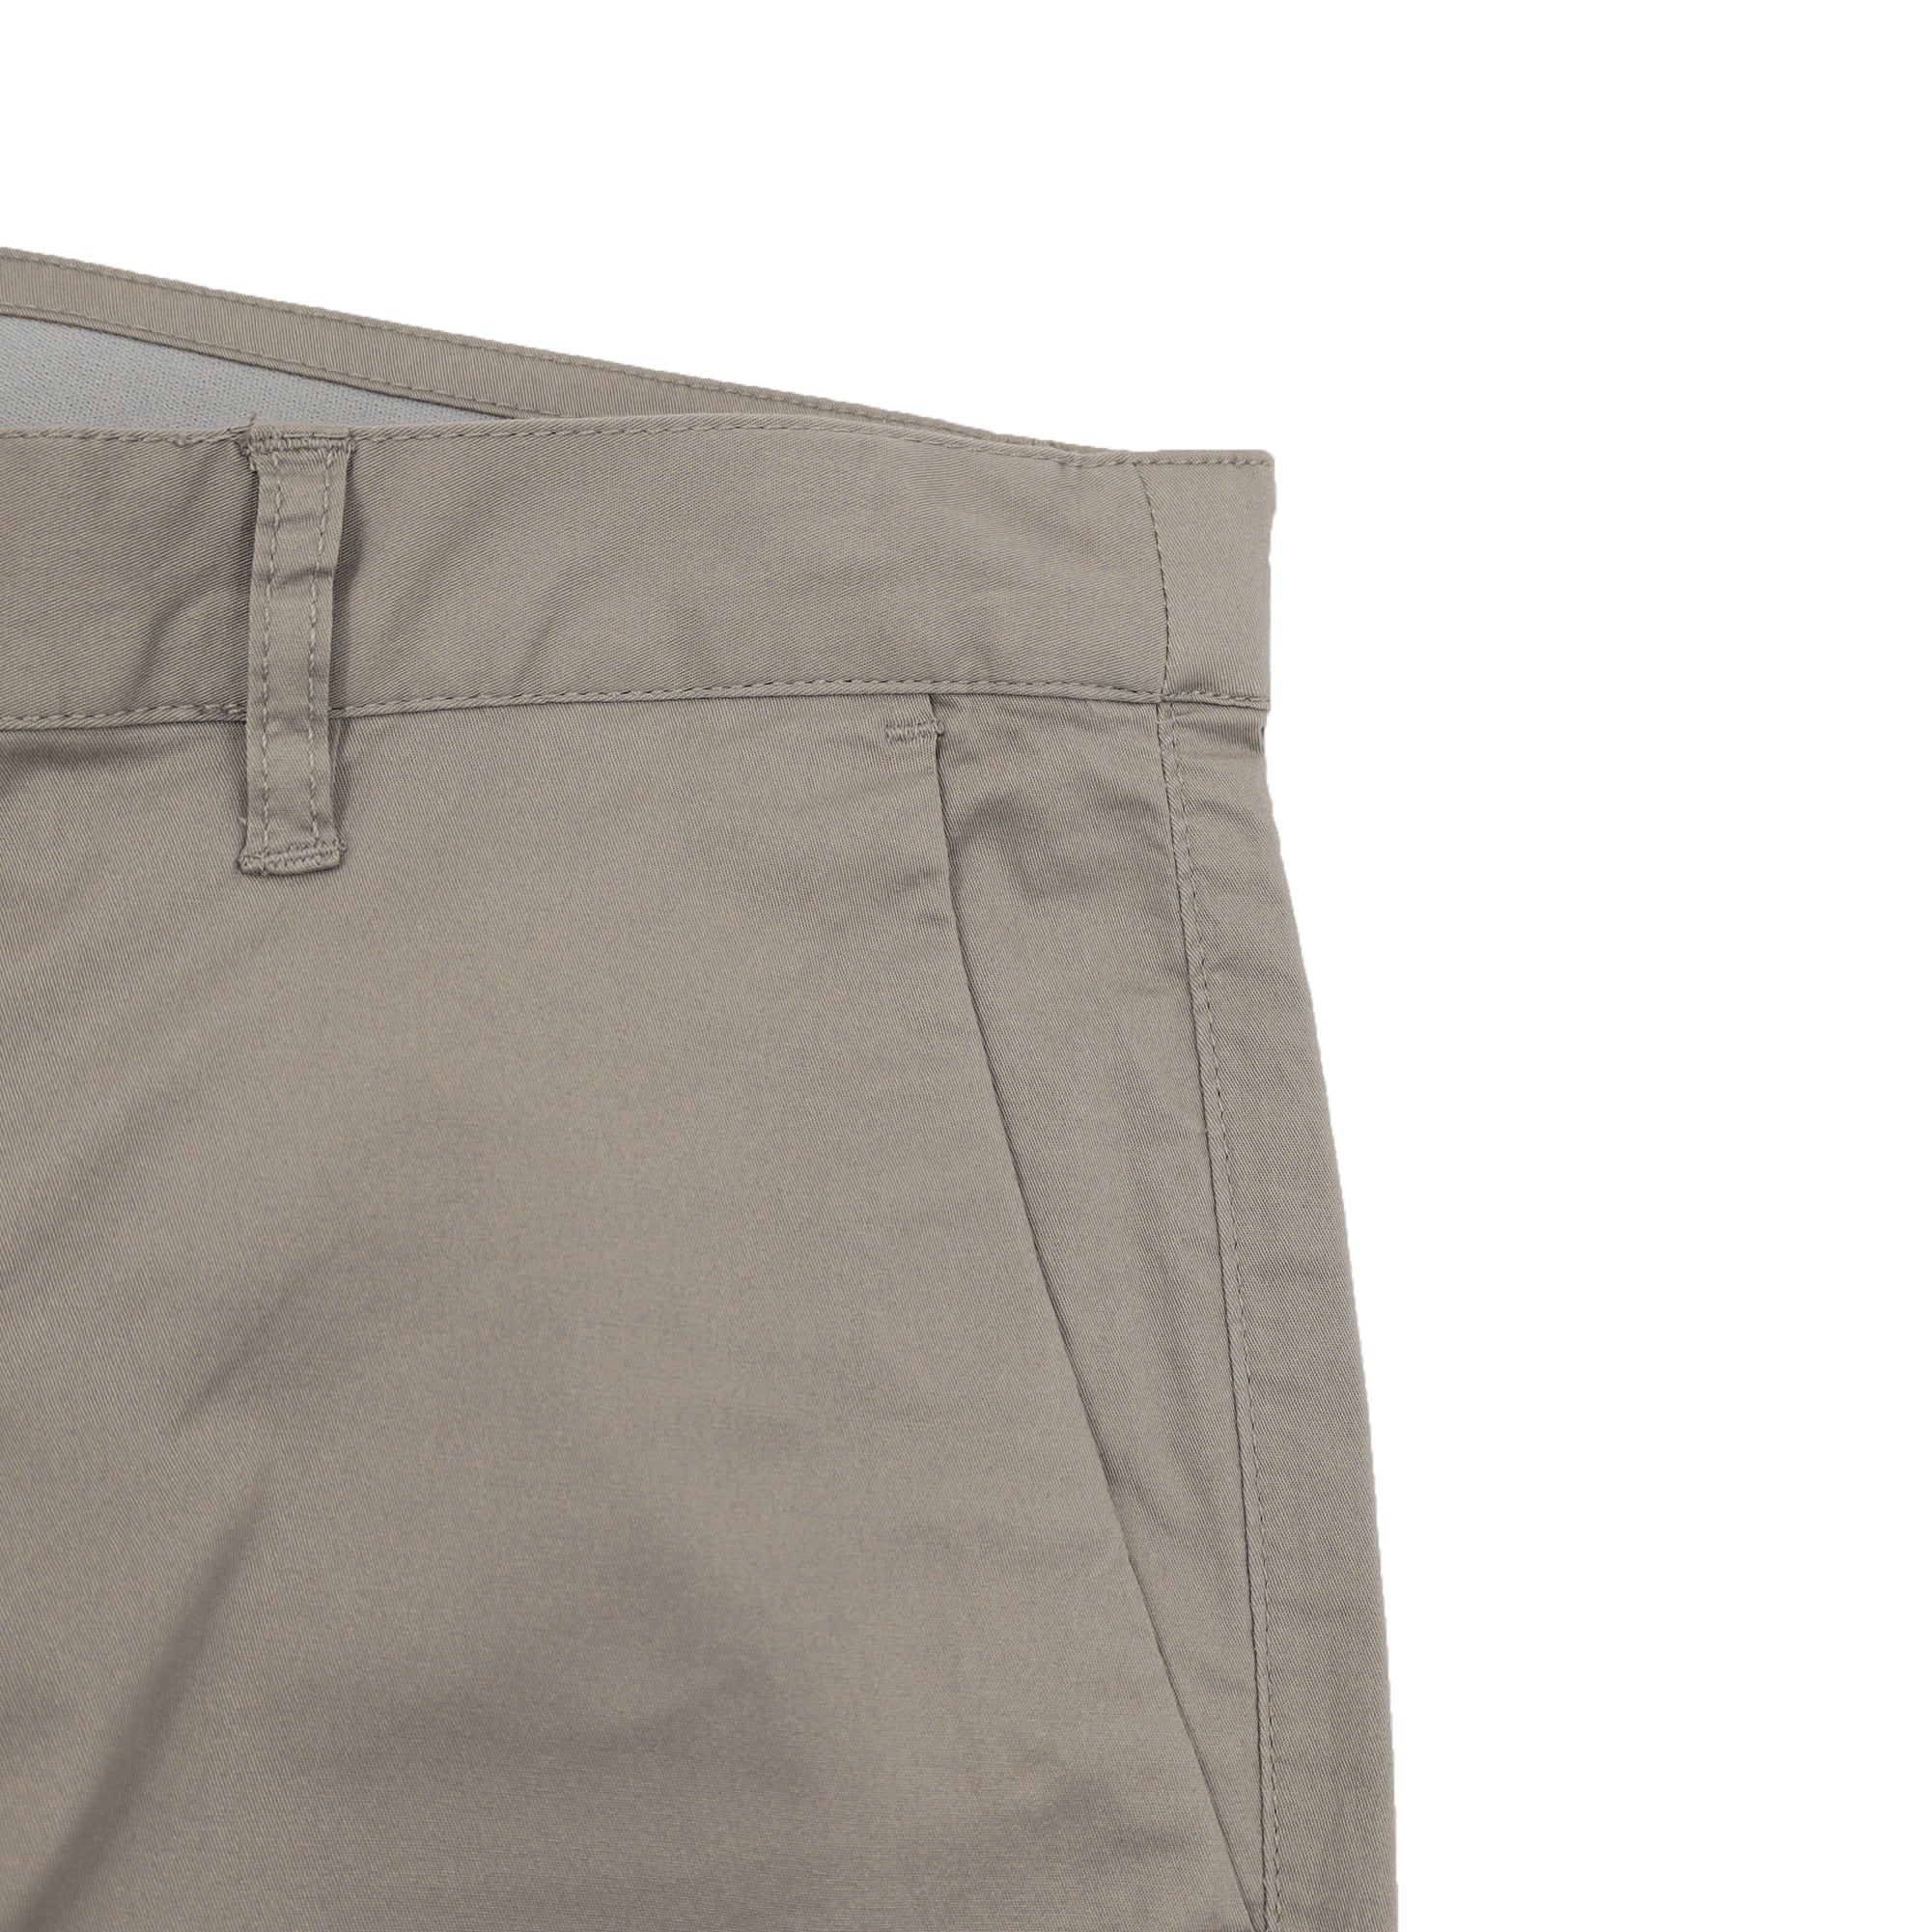 Men's Low Rise Skinny Tapered Pants